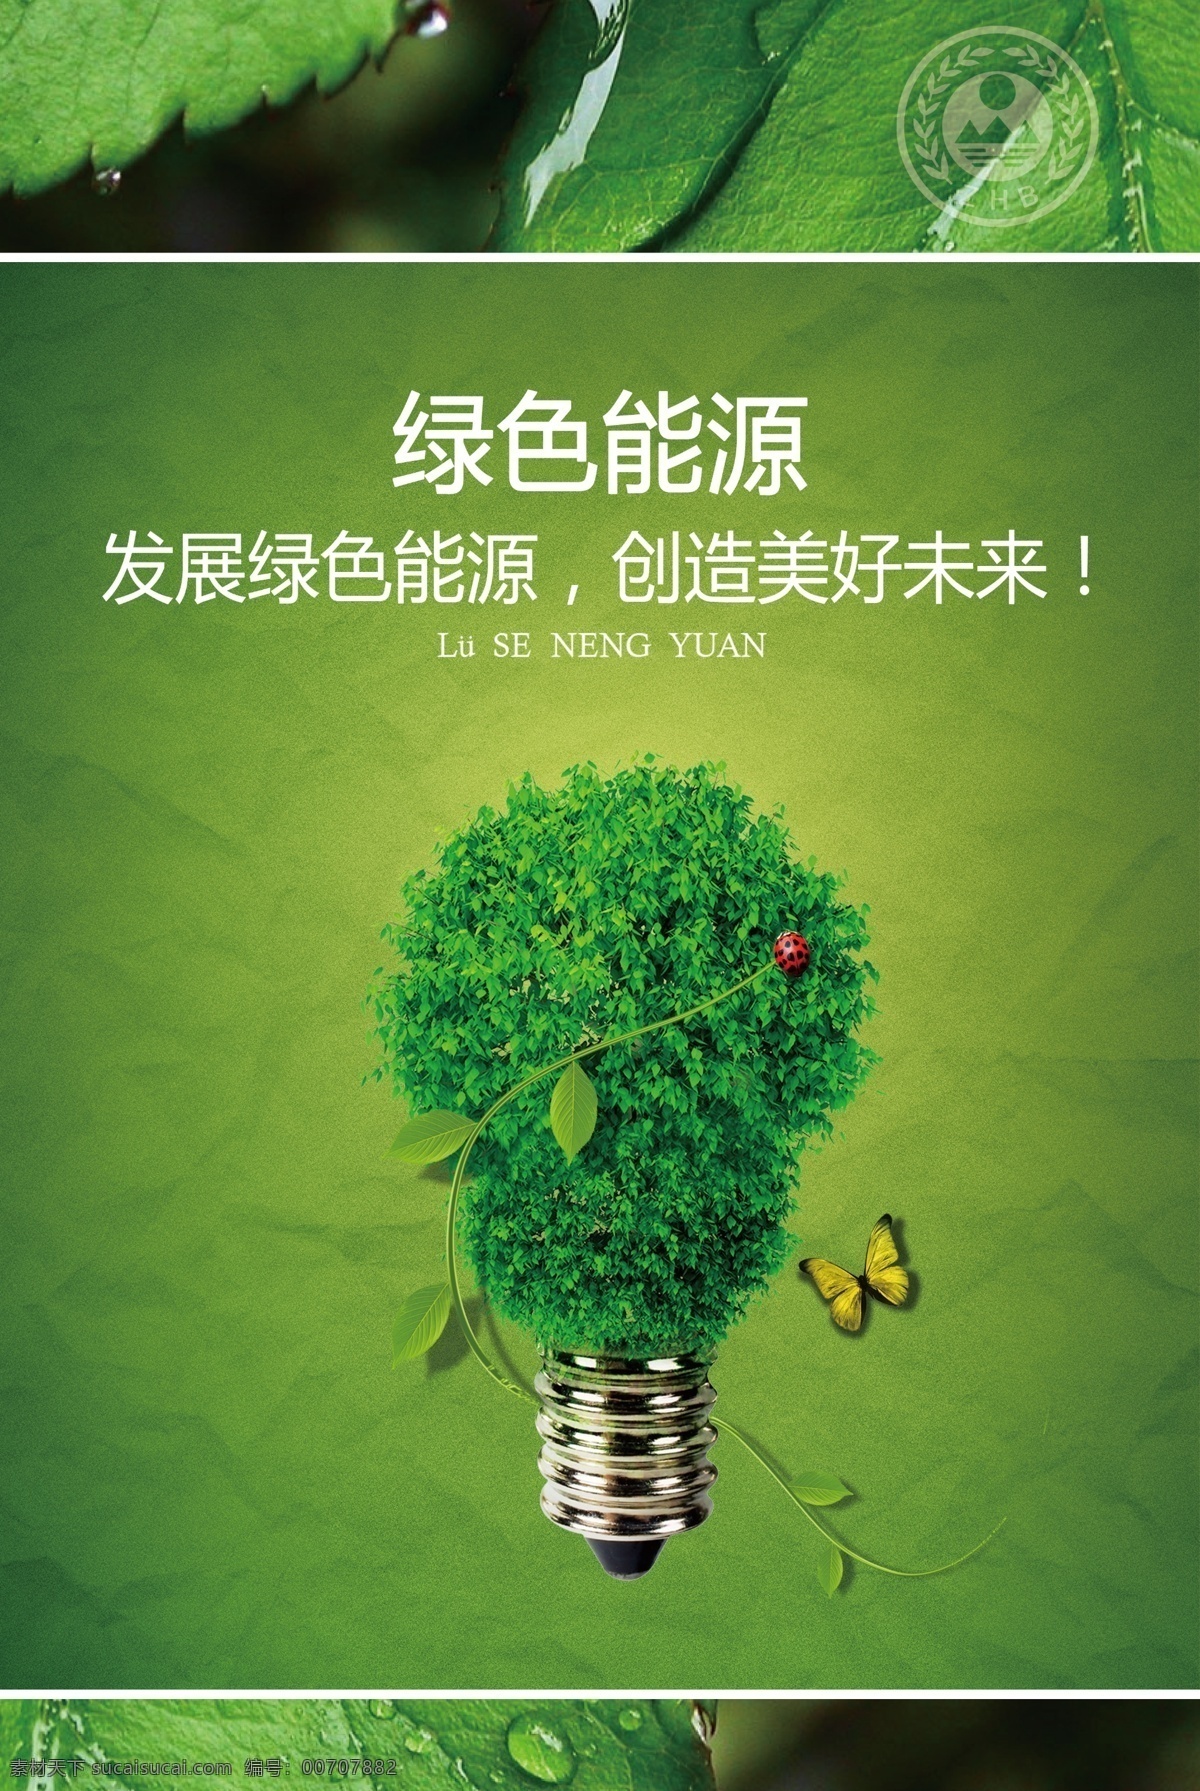 绿色 能源 广告 海报 绿化环保 绿色家园 绿色出行 创意效果 灯泡 树叶 水珠 水滴 宣传 节能 psd素材 红色